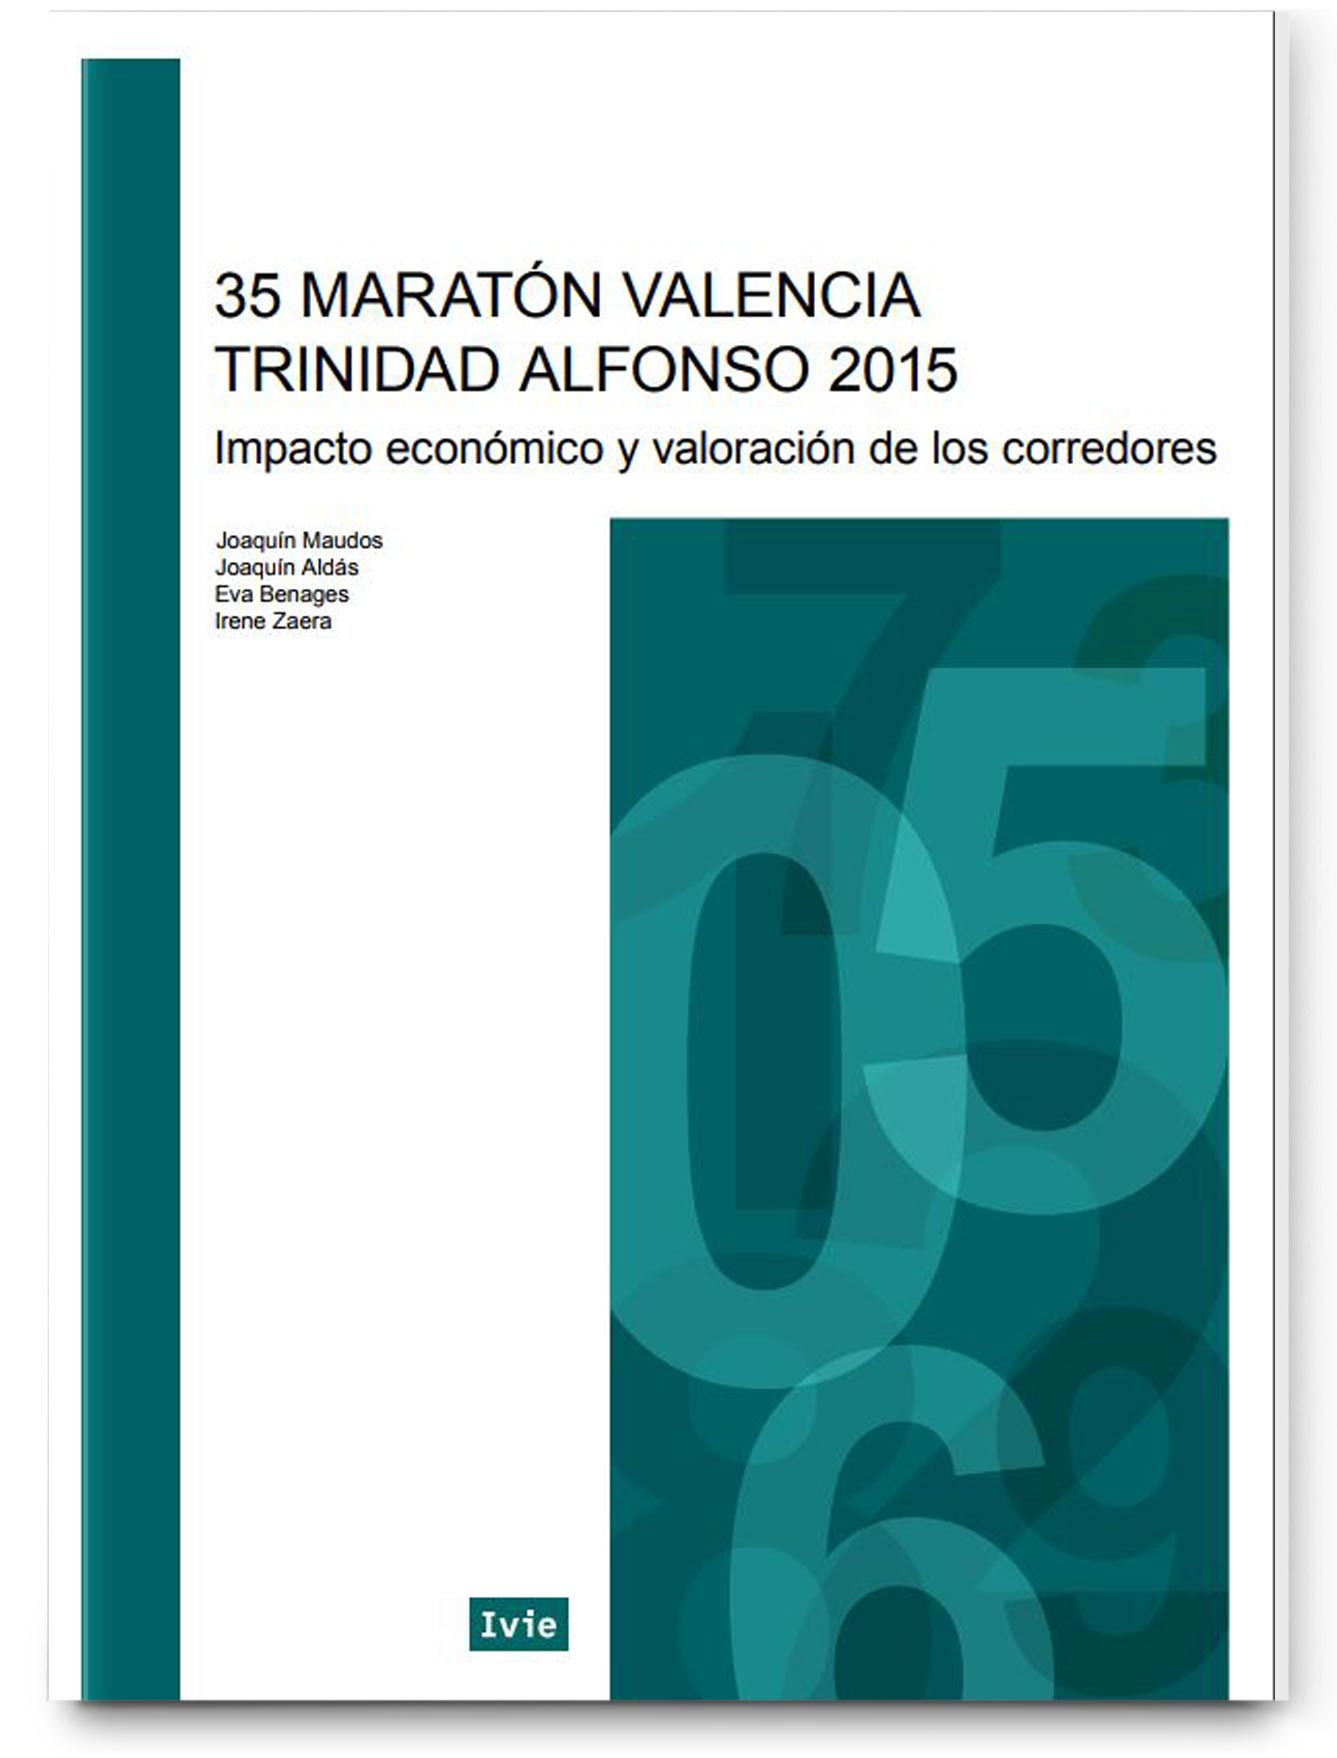 Impacto económico del 35 Maratón Valencia Trinidad Alfonso